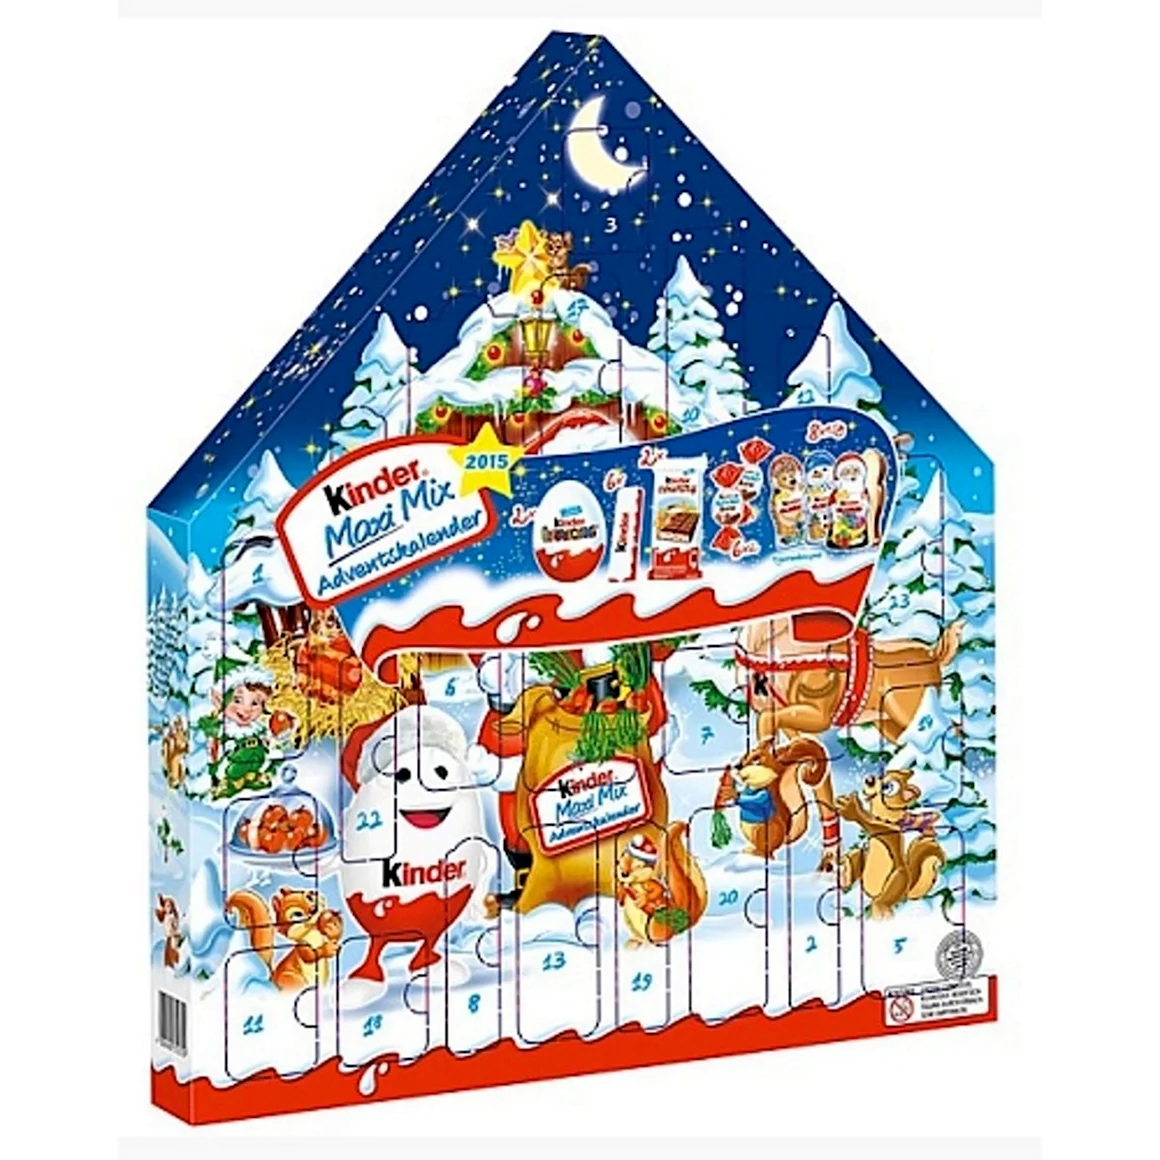 Рождественский календарь Киндер Maxi Mix